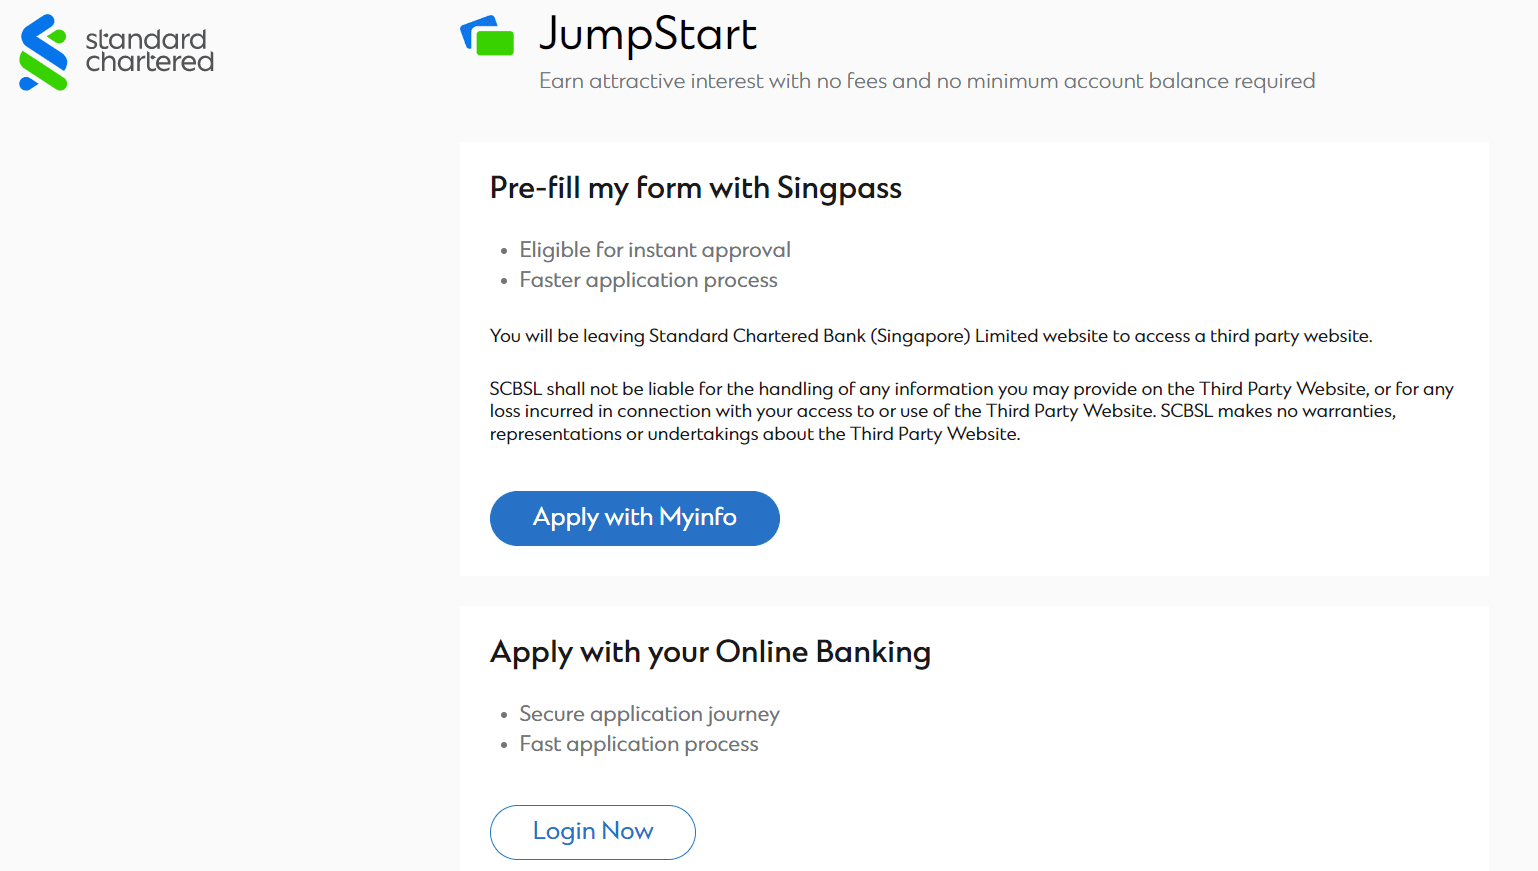 Standard Chartered JumpStart Account Application Step 1